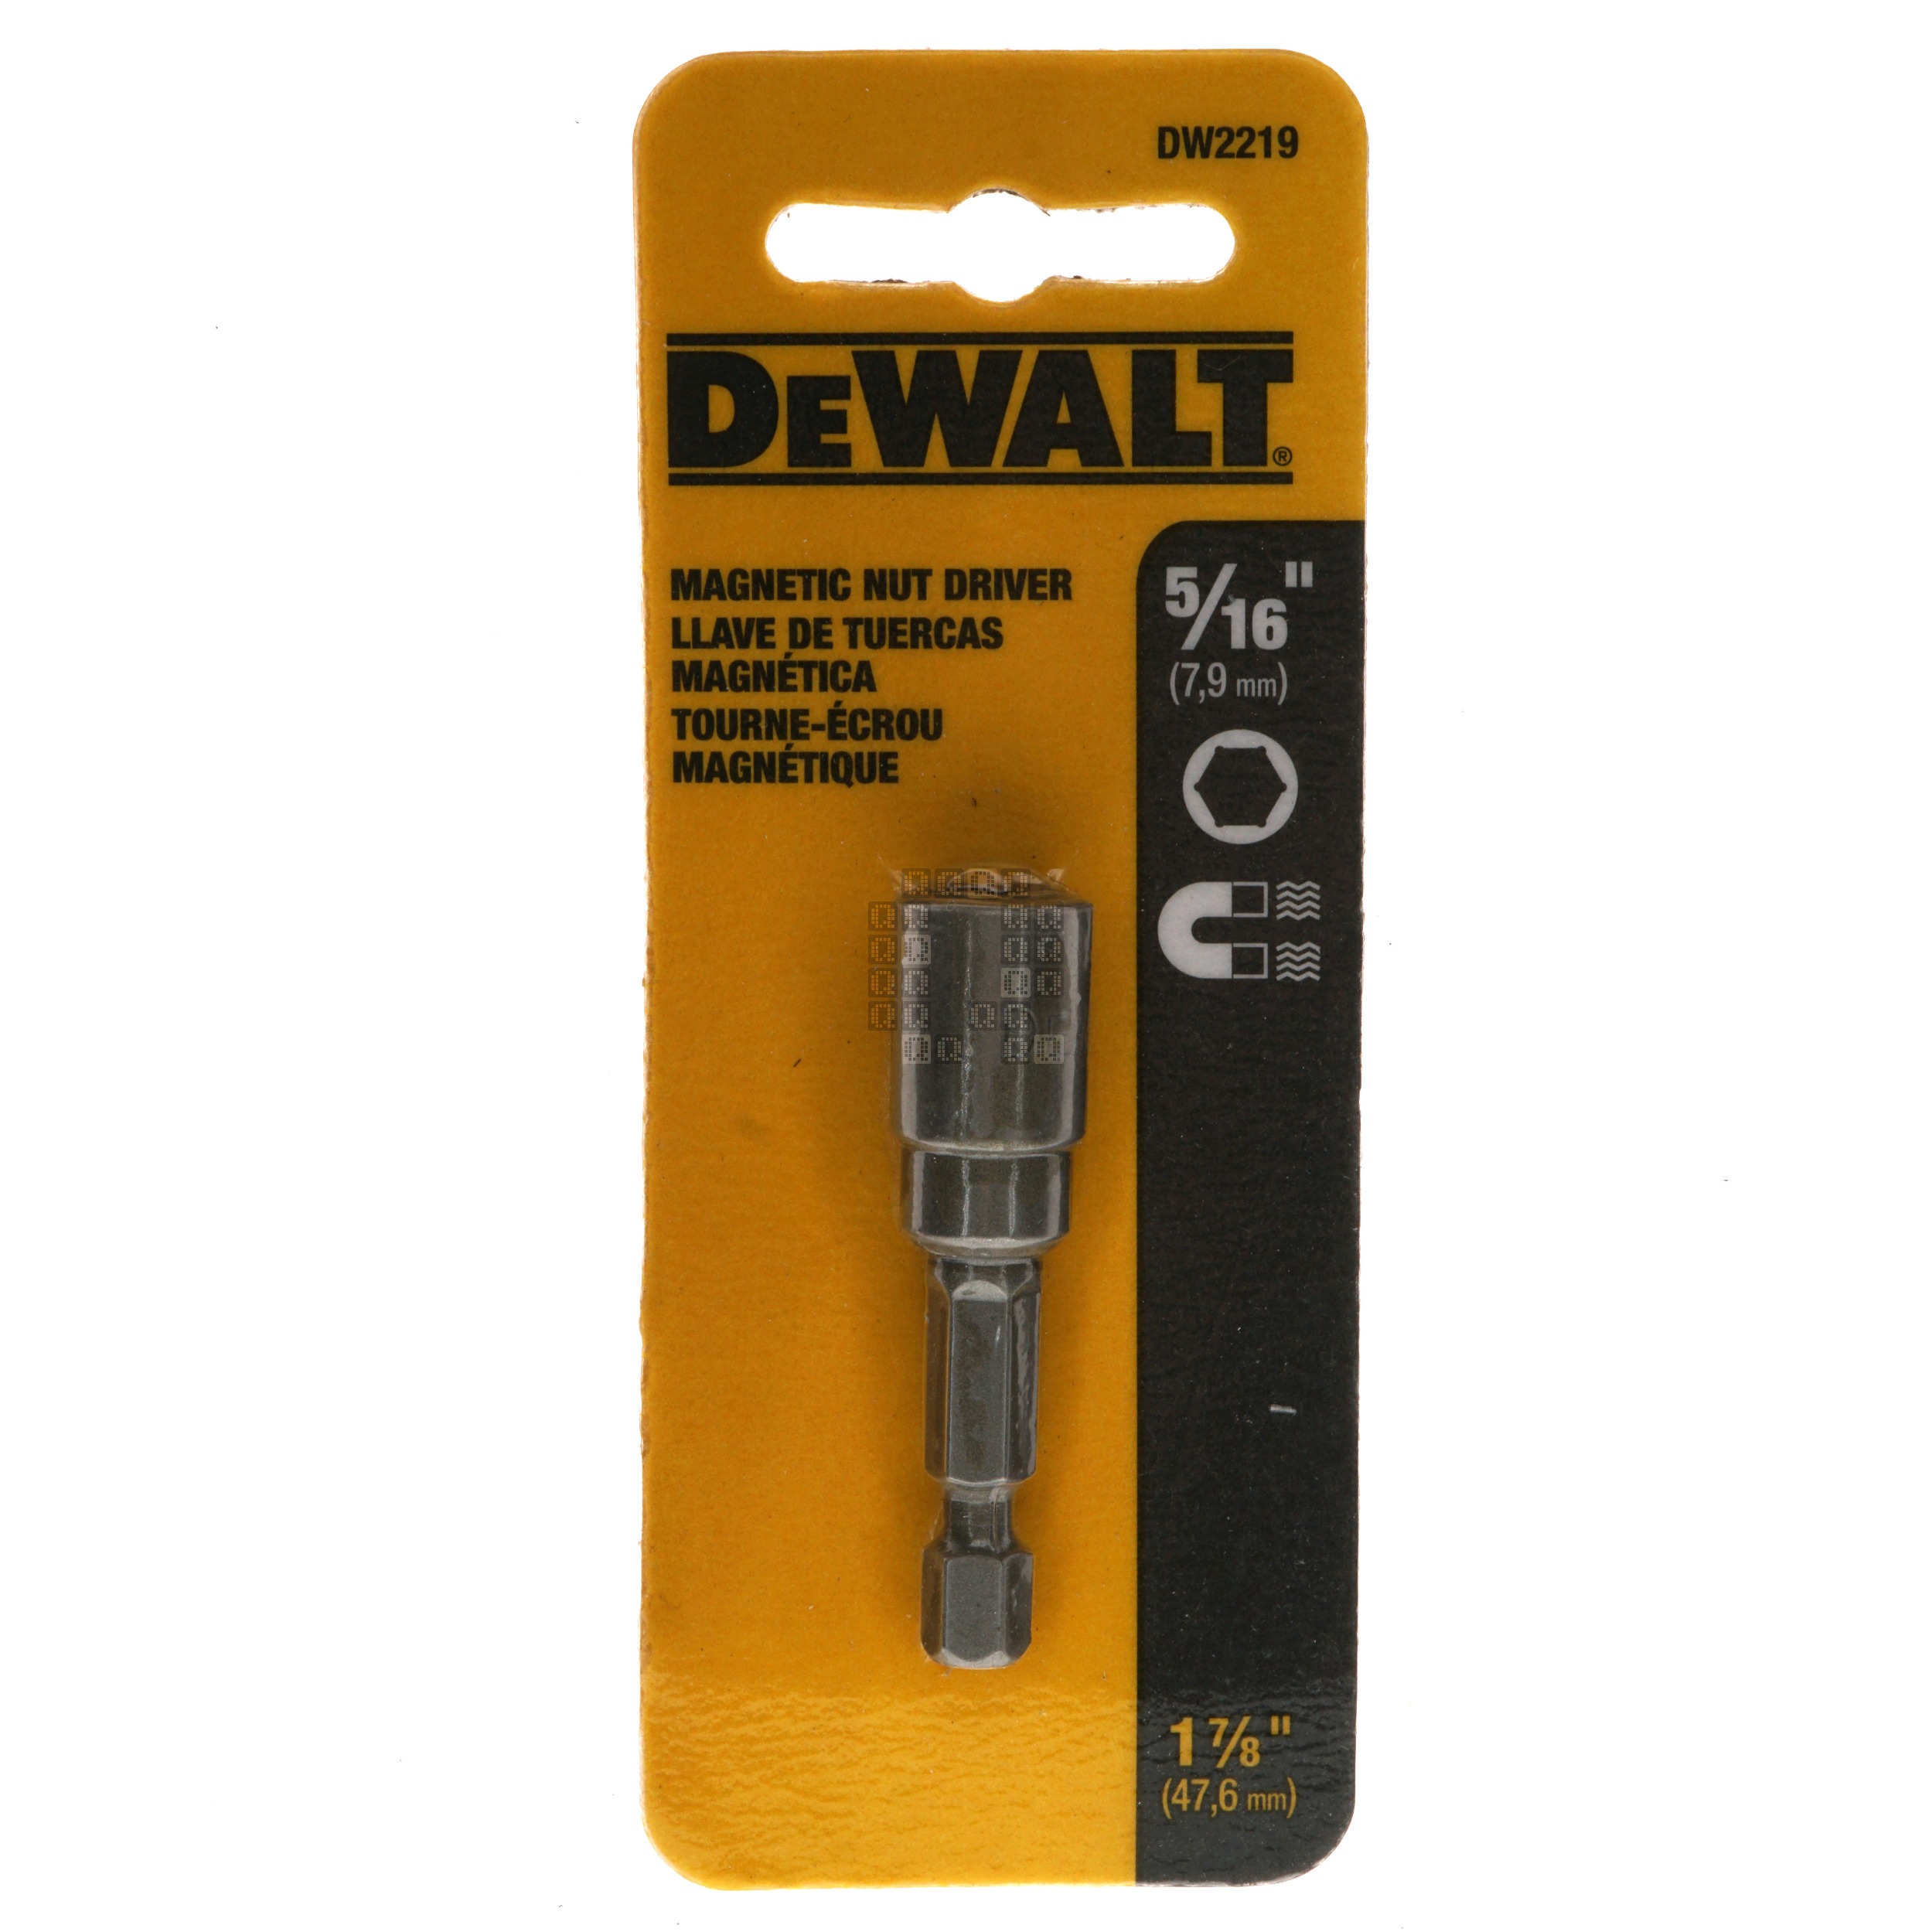 DeWALT DW2219 5/16" Magnetic Nut Driver, 1-7/8" Length